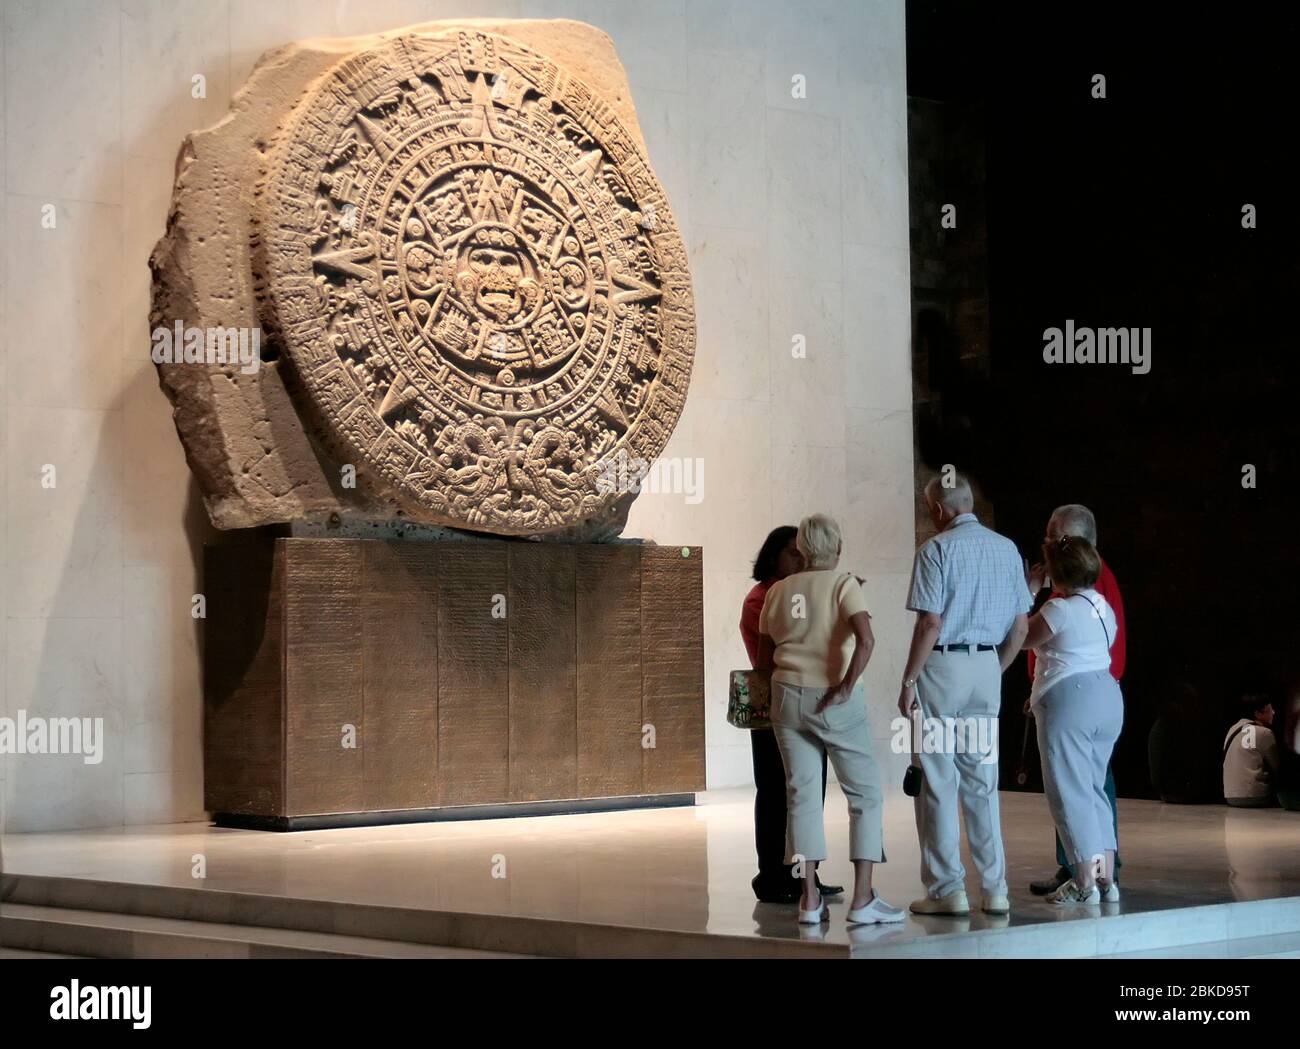 Gente mirando el Calendario Azteca de Piedra del Sol en el Museo de Antropología, Ciudad de México, México Foto de stock